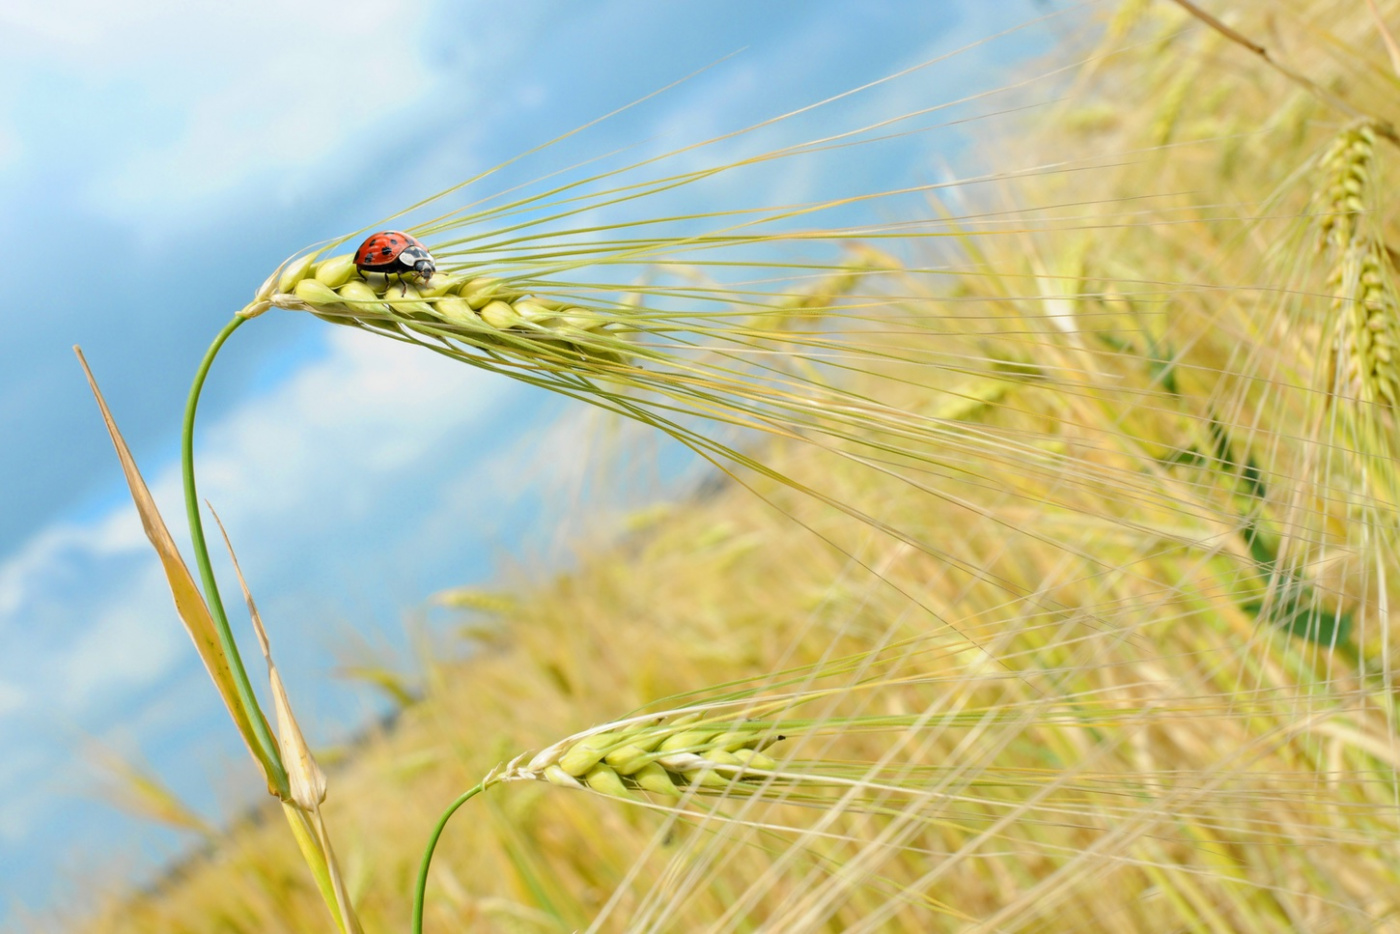 Barley water och klimatfunderingar